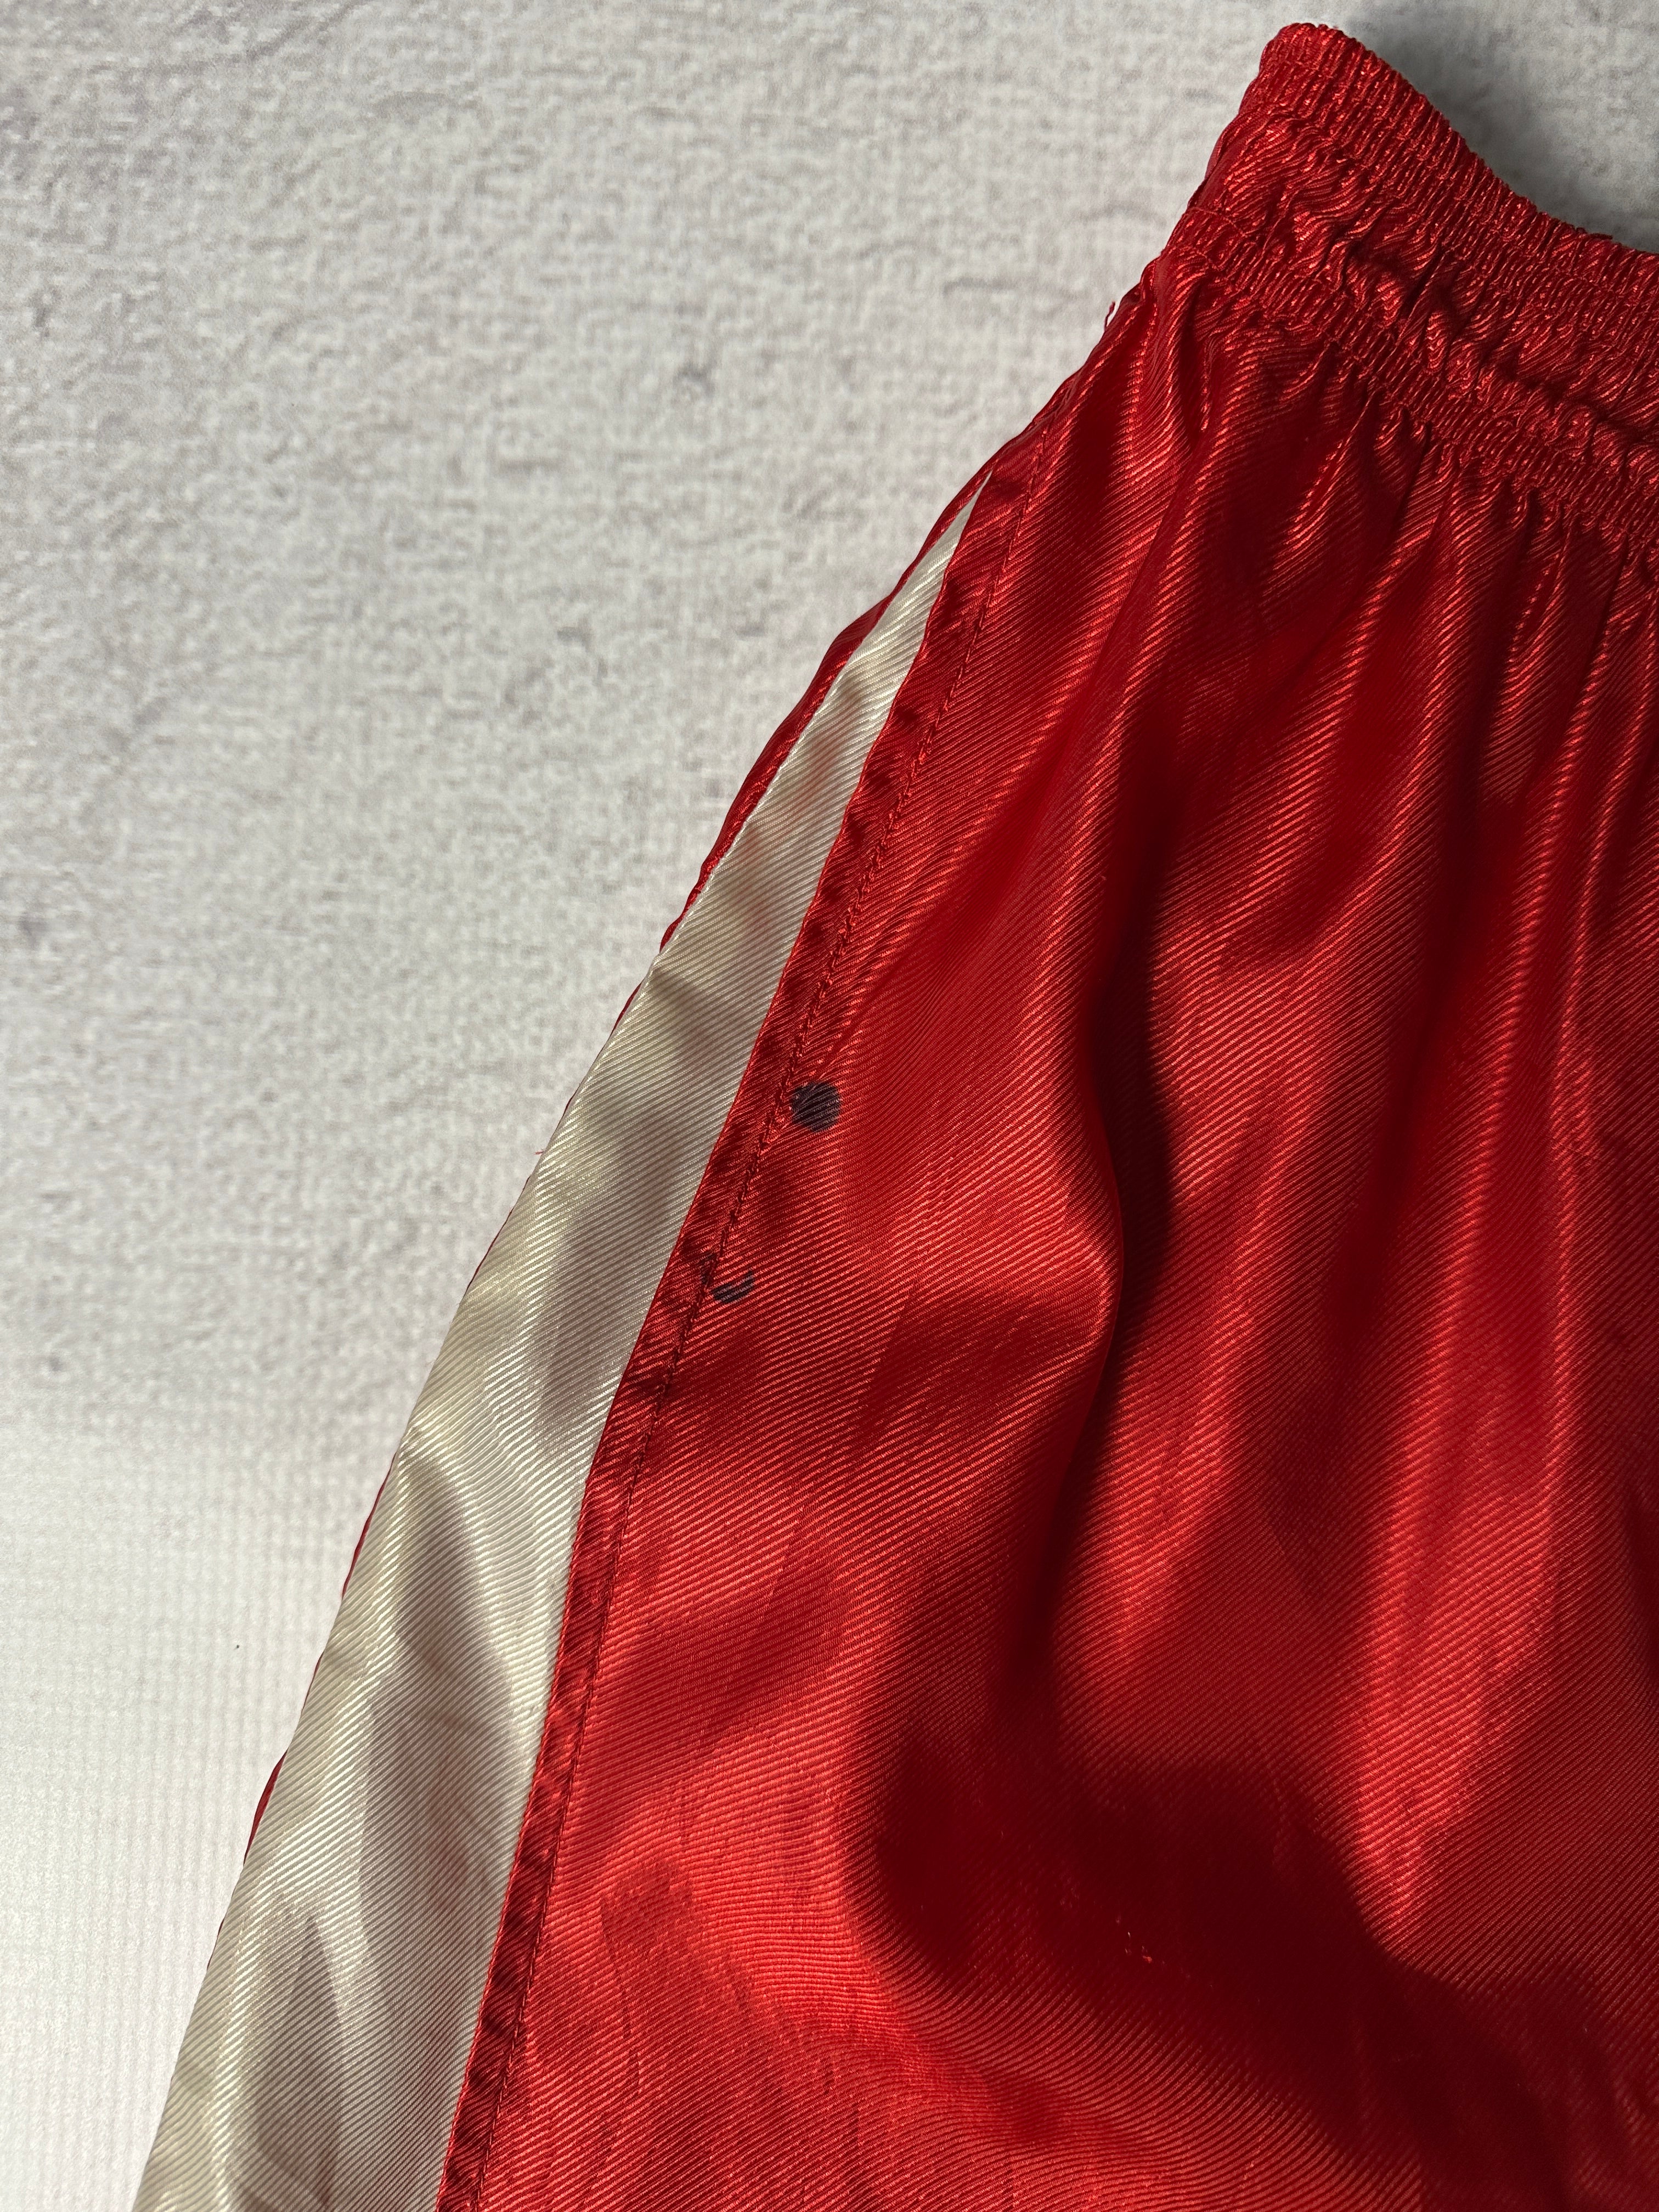 Vintage Reebok Athletic Shorts - Men's XL